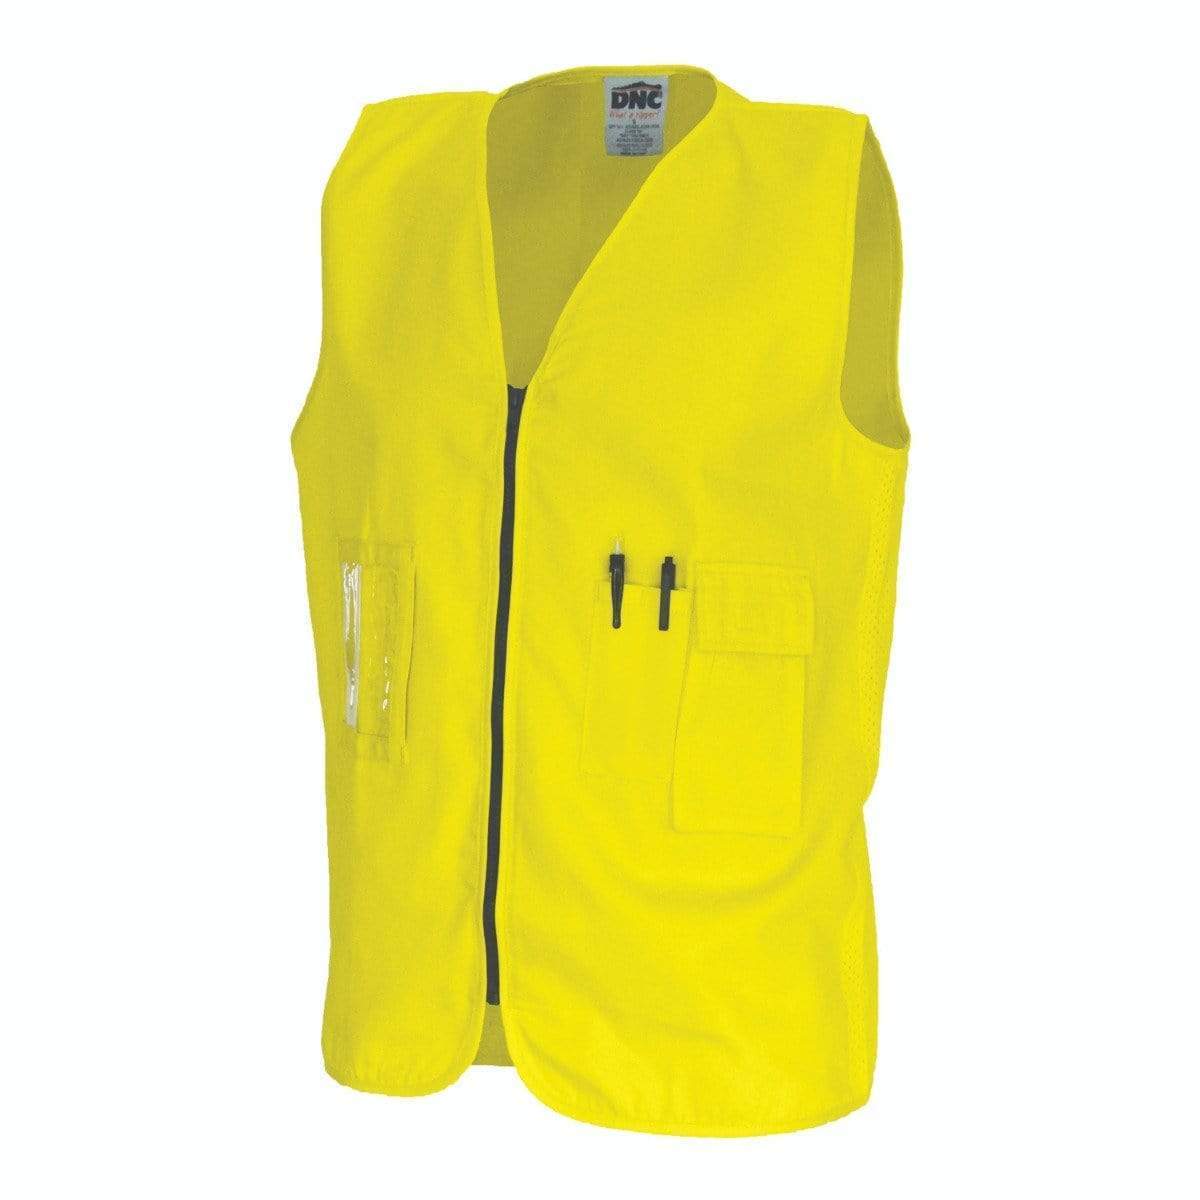 Dnc Workwear Daytime Cotton Safety Vest  - 3808 Work Wear DNC Workwear Yellow S 